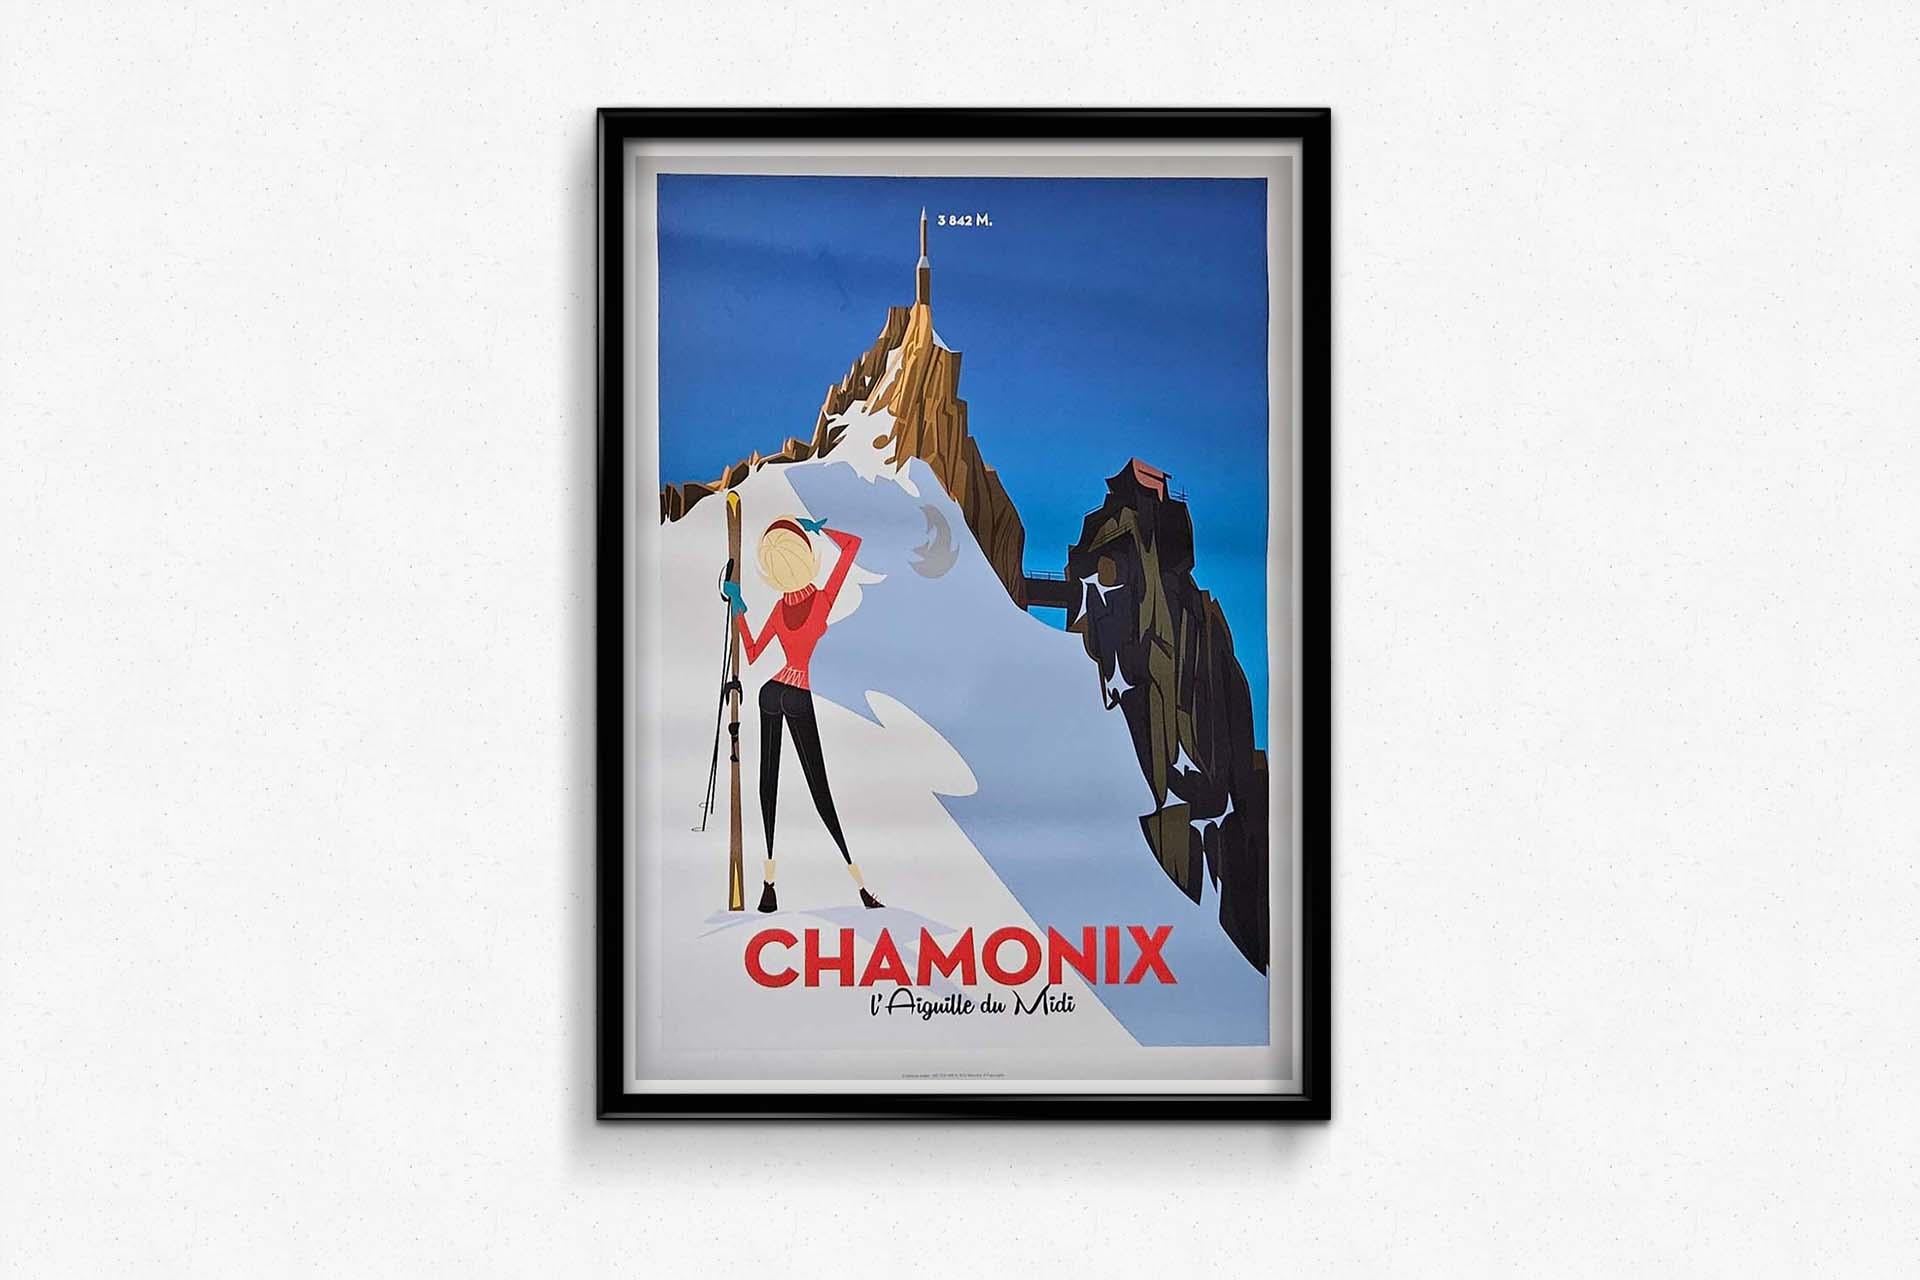 2012 original poster by Monsieur Z - Chamonix l'aiguille du Midi For Sale 1